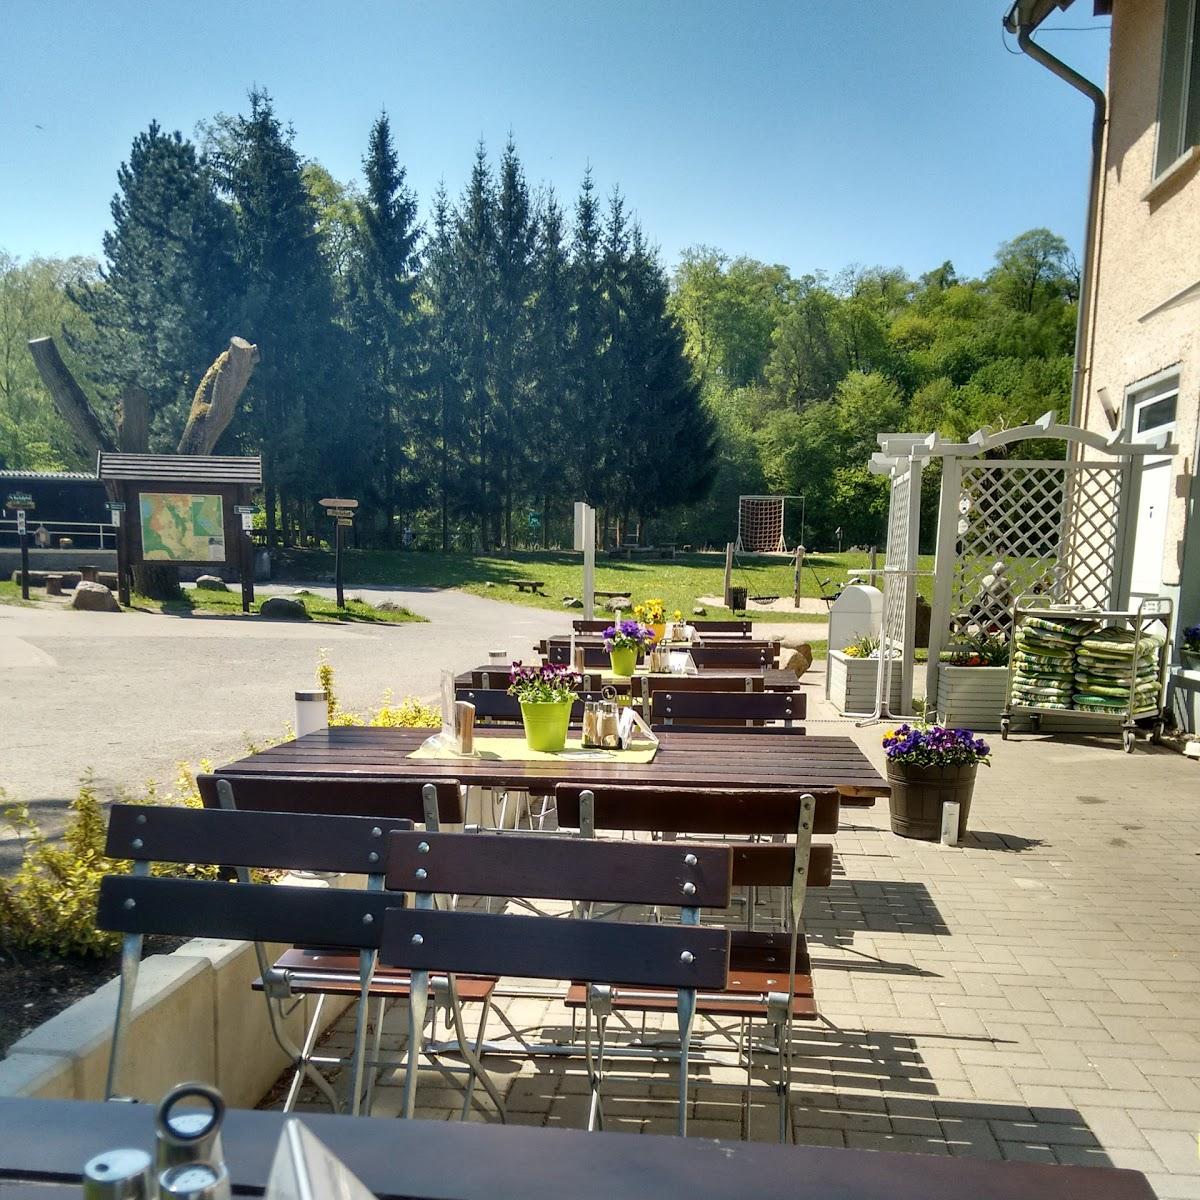 Restaurant "Zur Hintersten Mühle" in Neubrandenburg